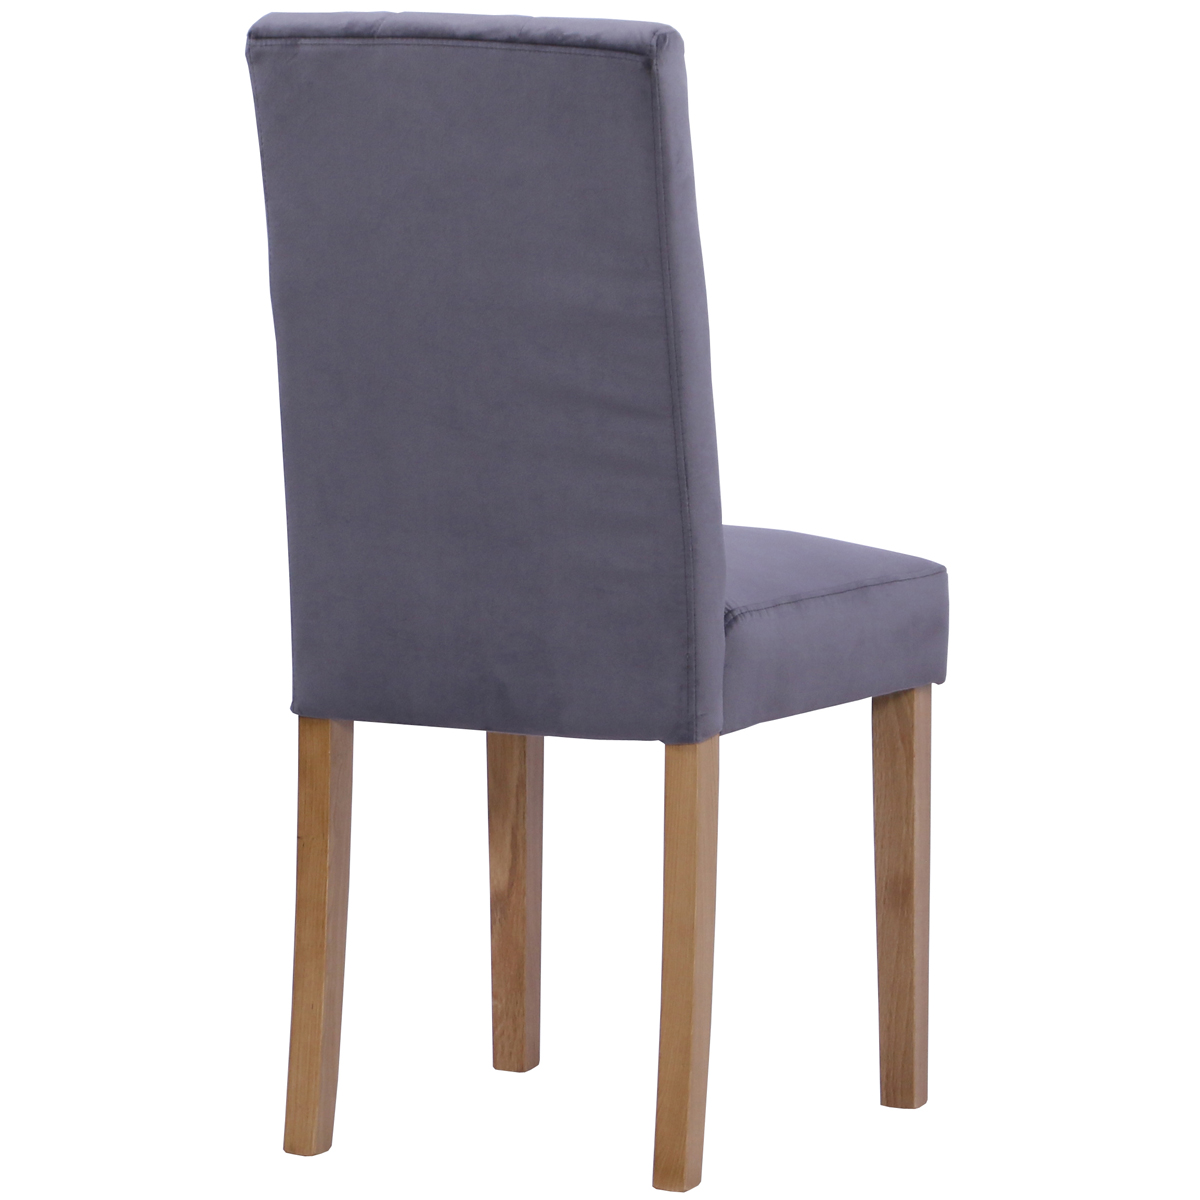 New Oak Ash 101 Chair